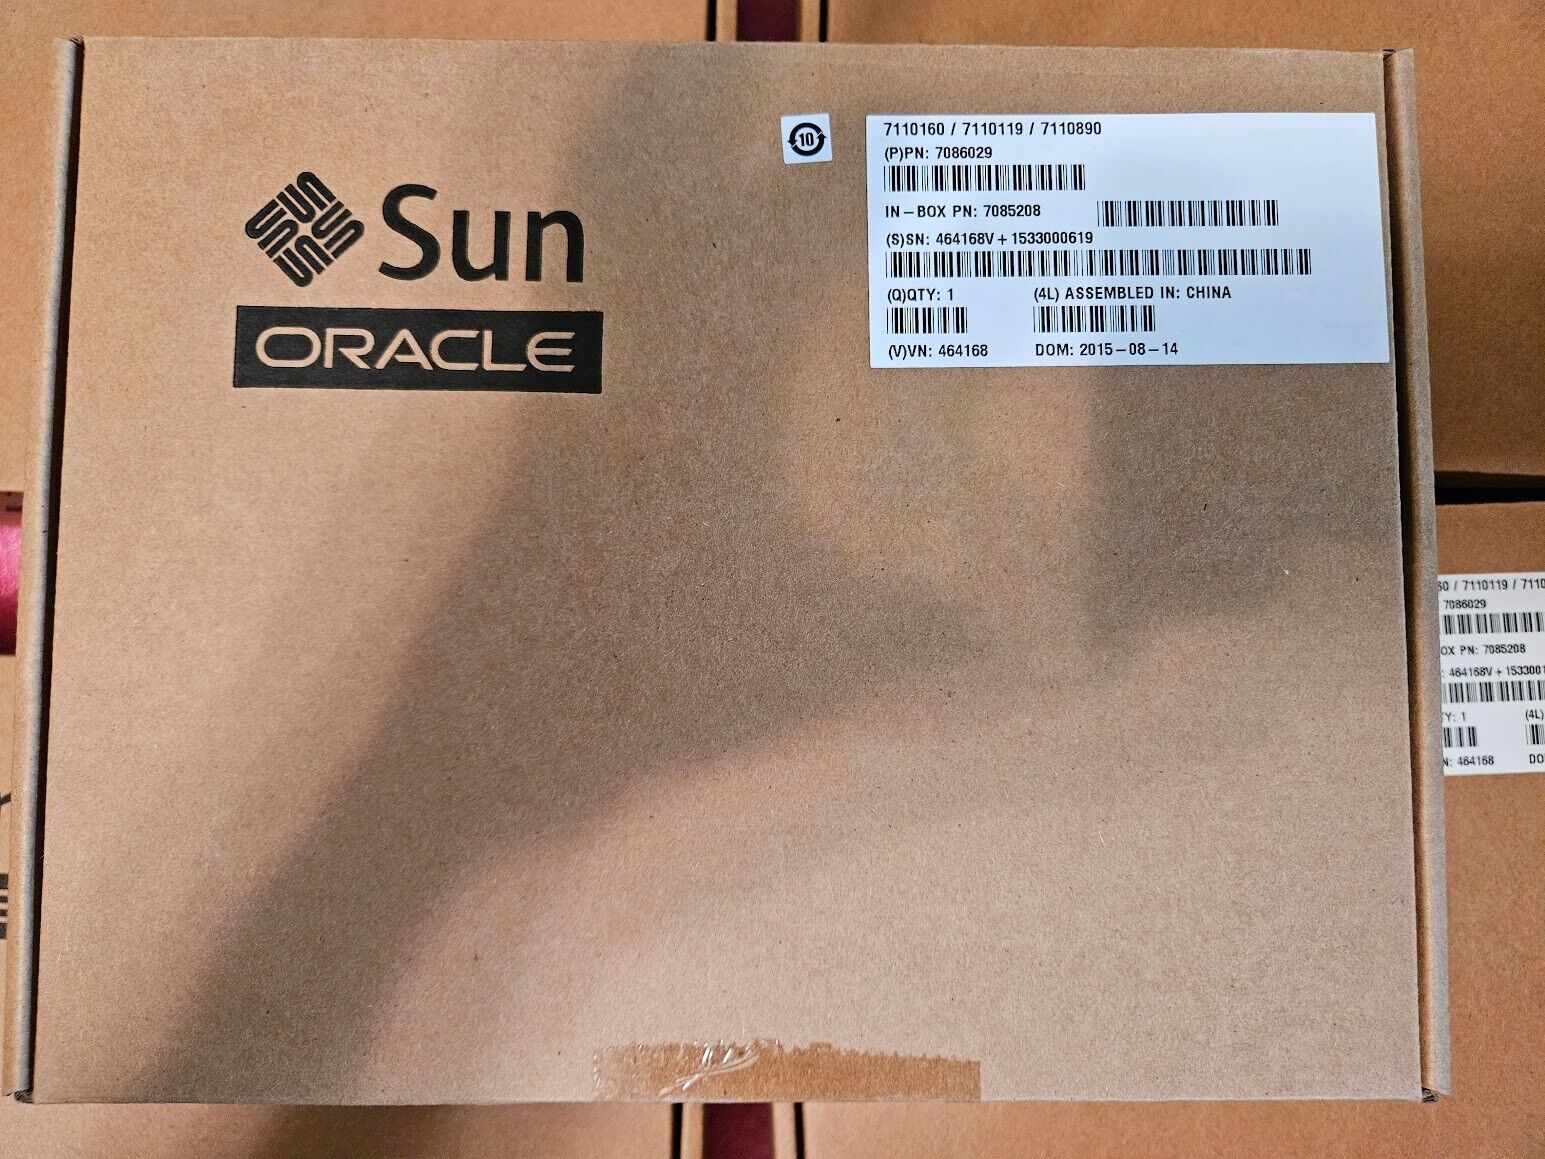 NEW Box Sun Oracle 7085208 8-PORT 12GBPS SAS HBA 7086029 7110160 7110119 7085208